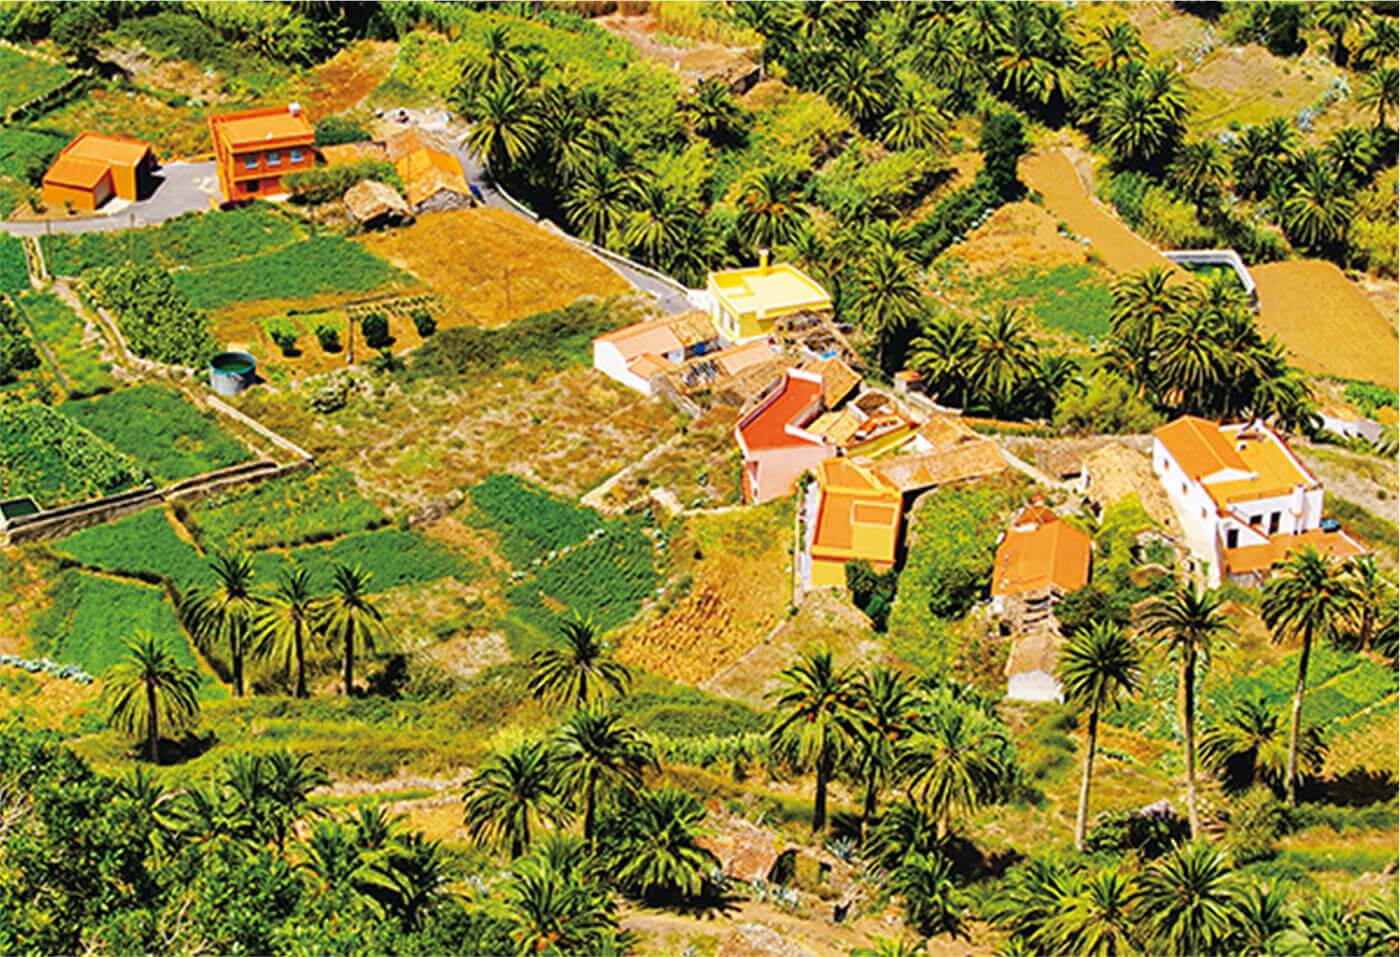 ナツメ椰子の木やジャガイモの段々畑が島の到る所に見られる（ラ・ゴメラ島）